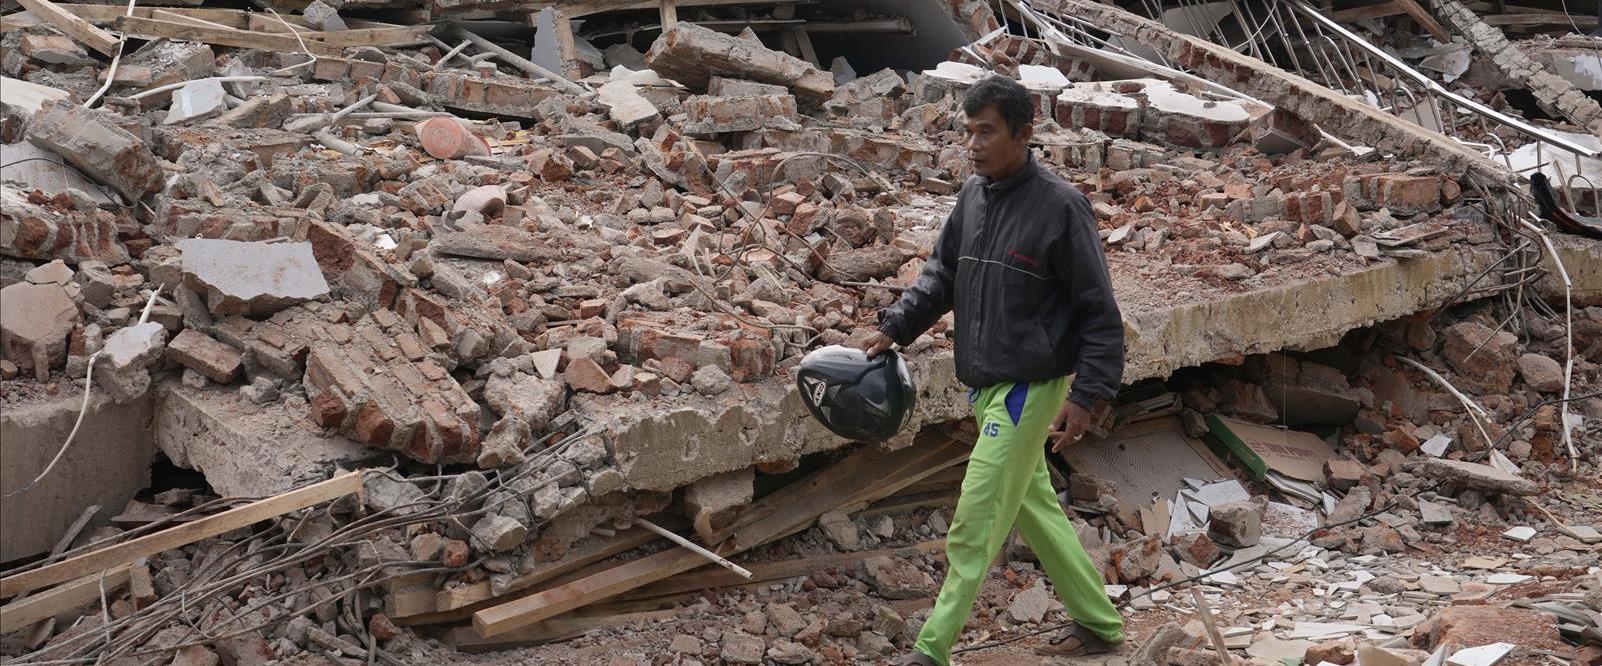 הריסות רעידת האדמה באינדונזיה, היום השני